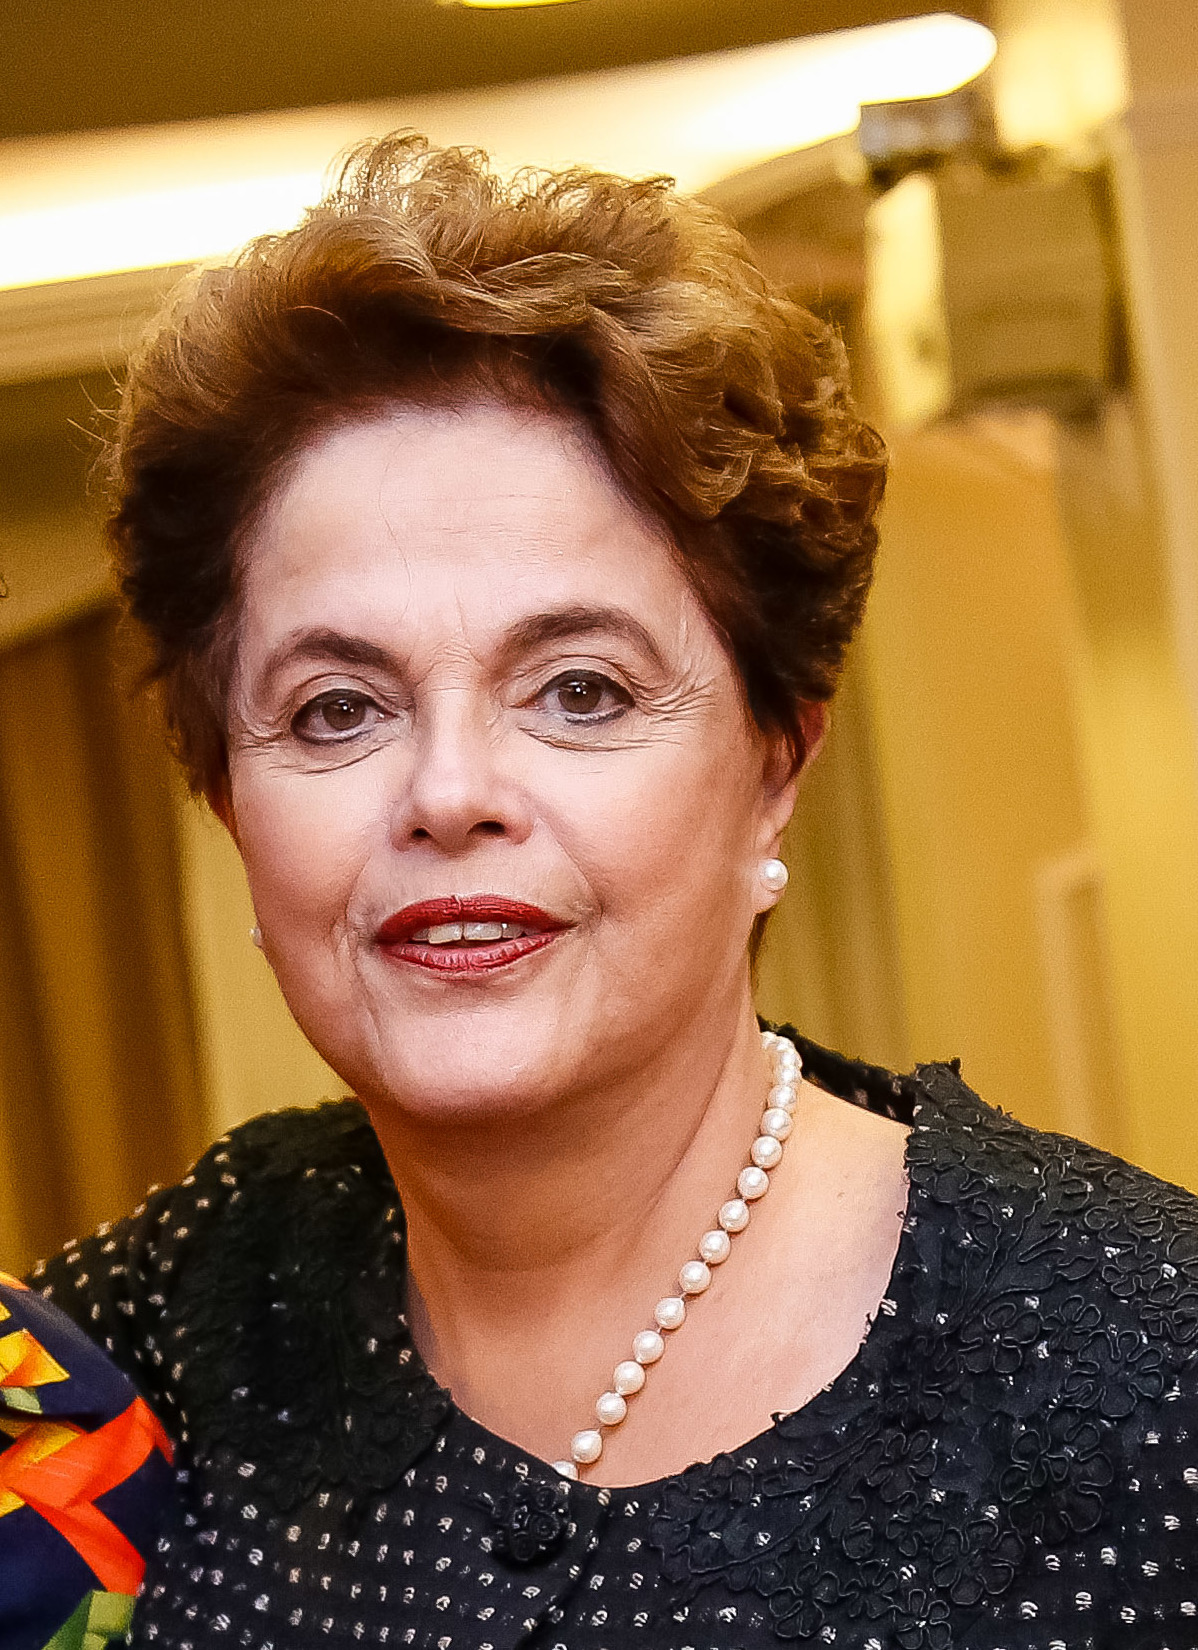 Banco dos Brics inicia processo de transição e abre caminho para Dilma assumir presidência